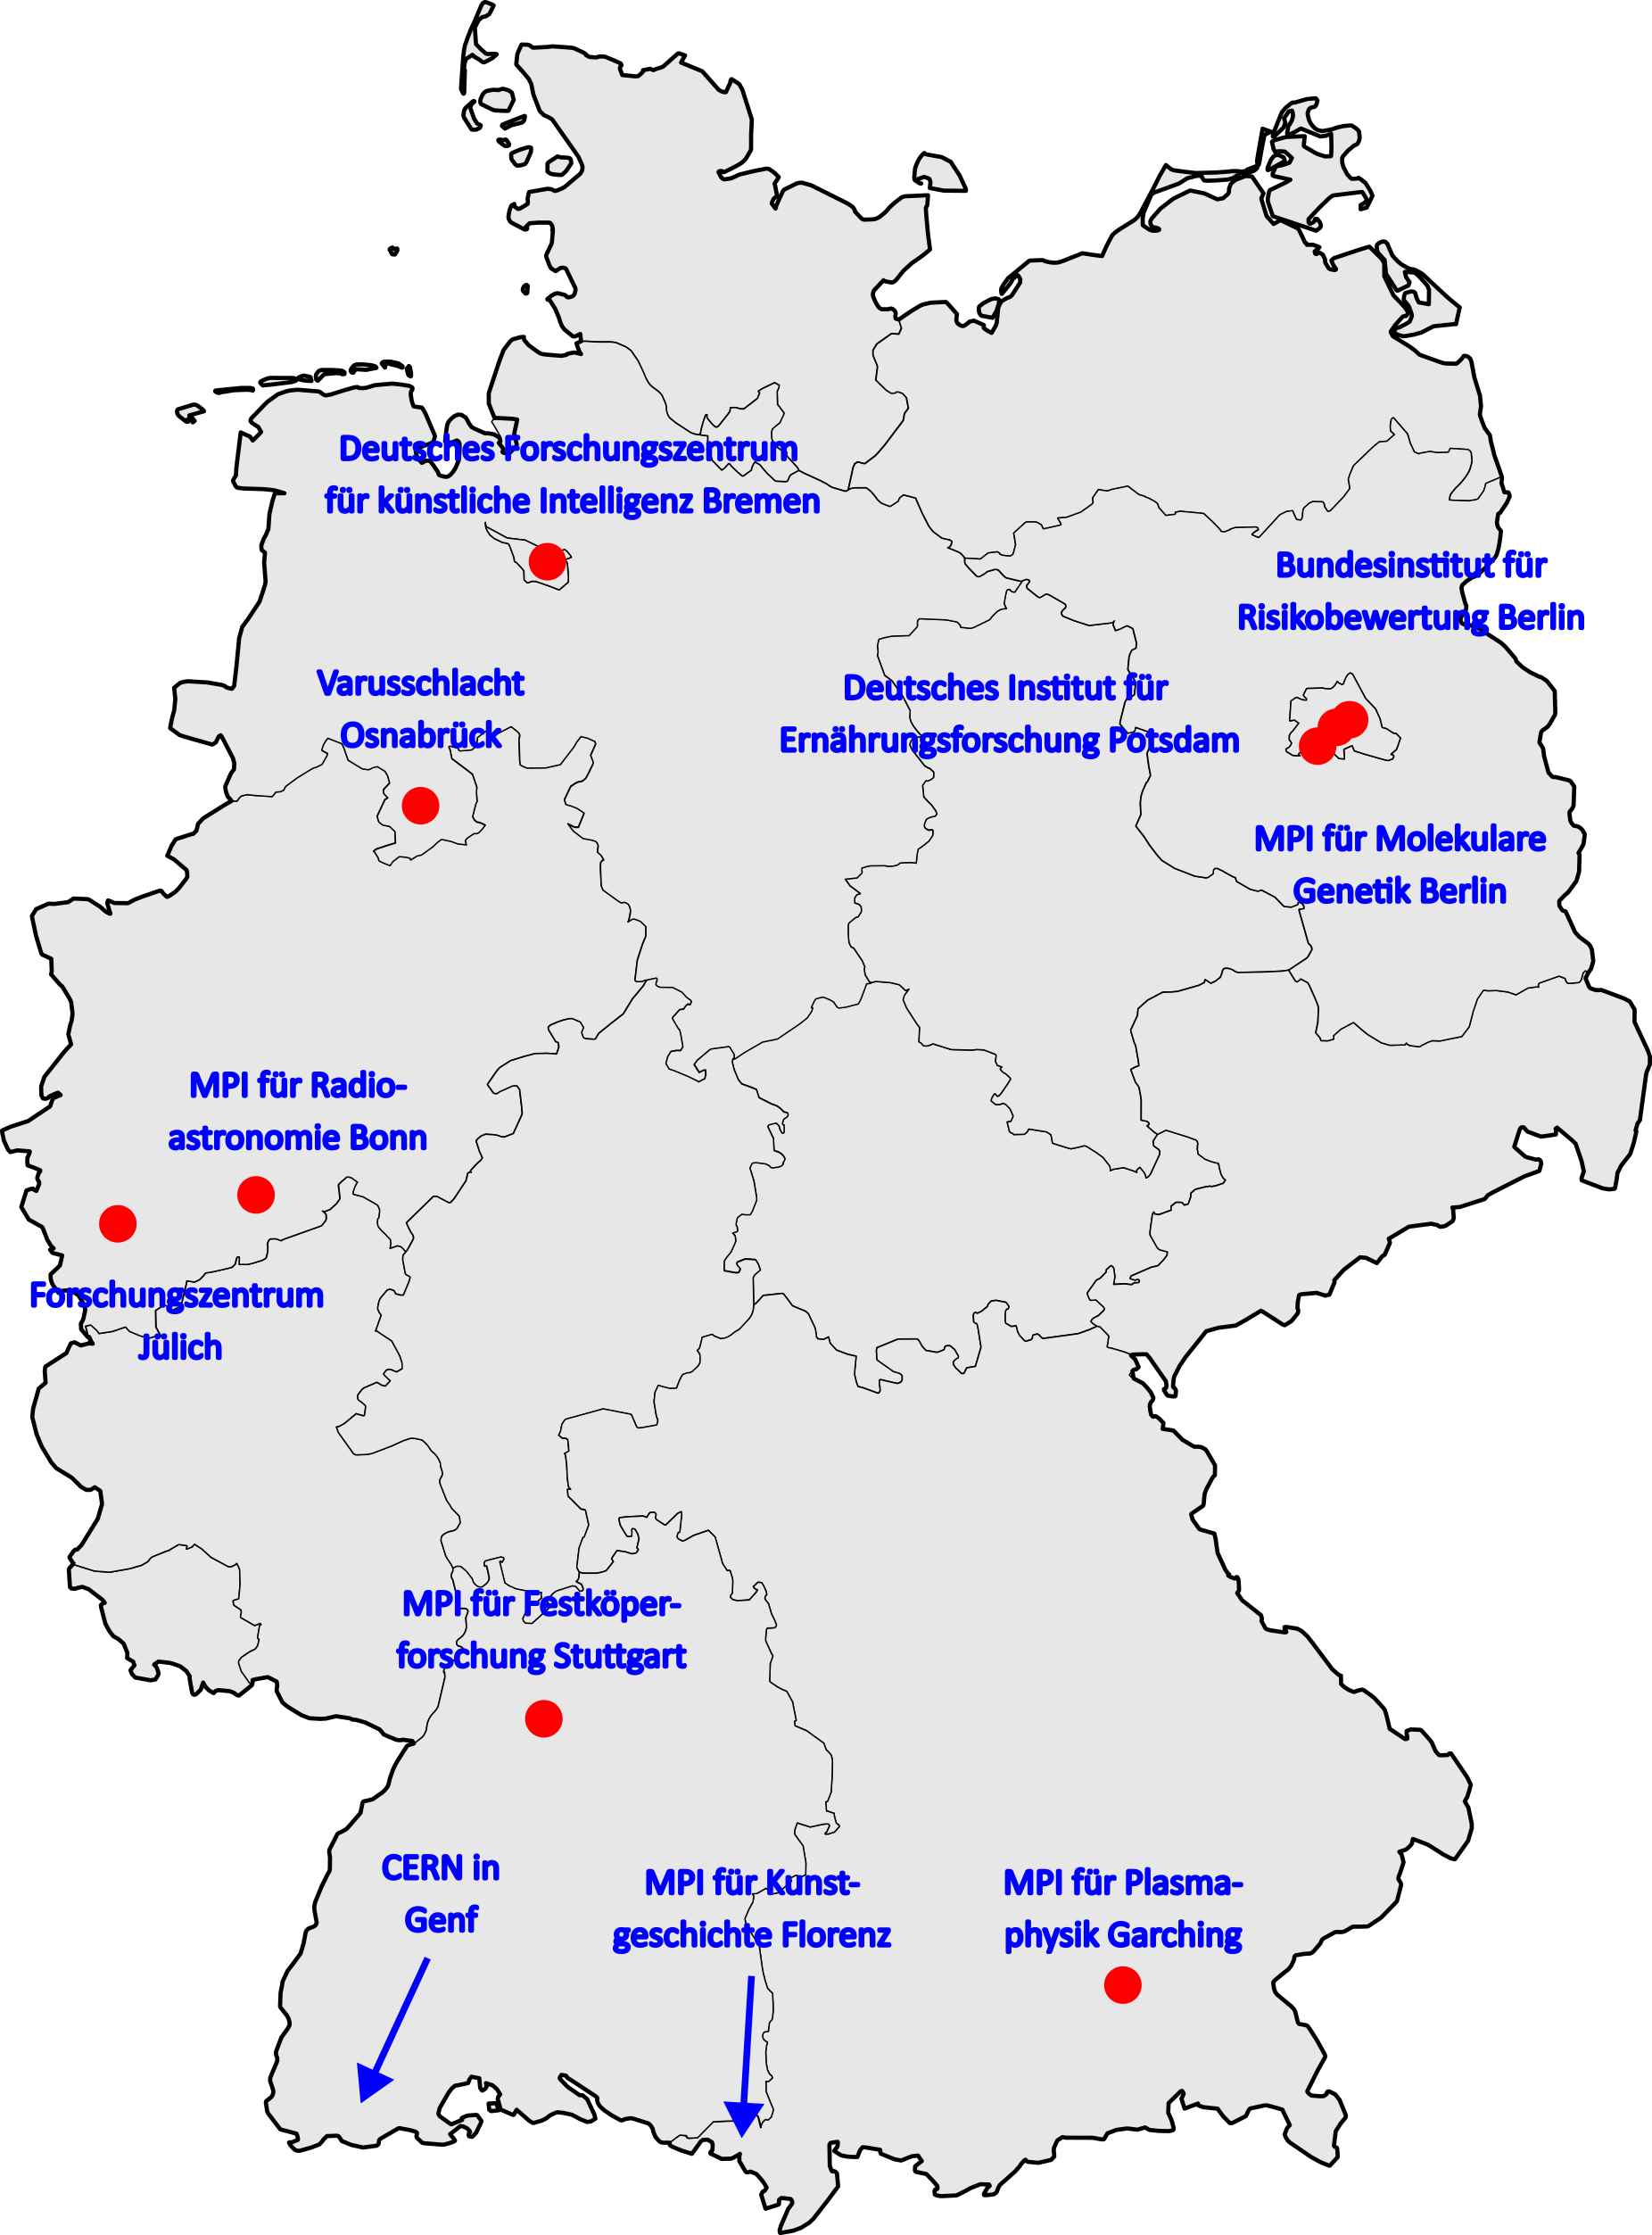 Quelle der Karte: https://de.wikipedia.org/wiki/Datei:Karte_Deutschland.svg